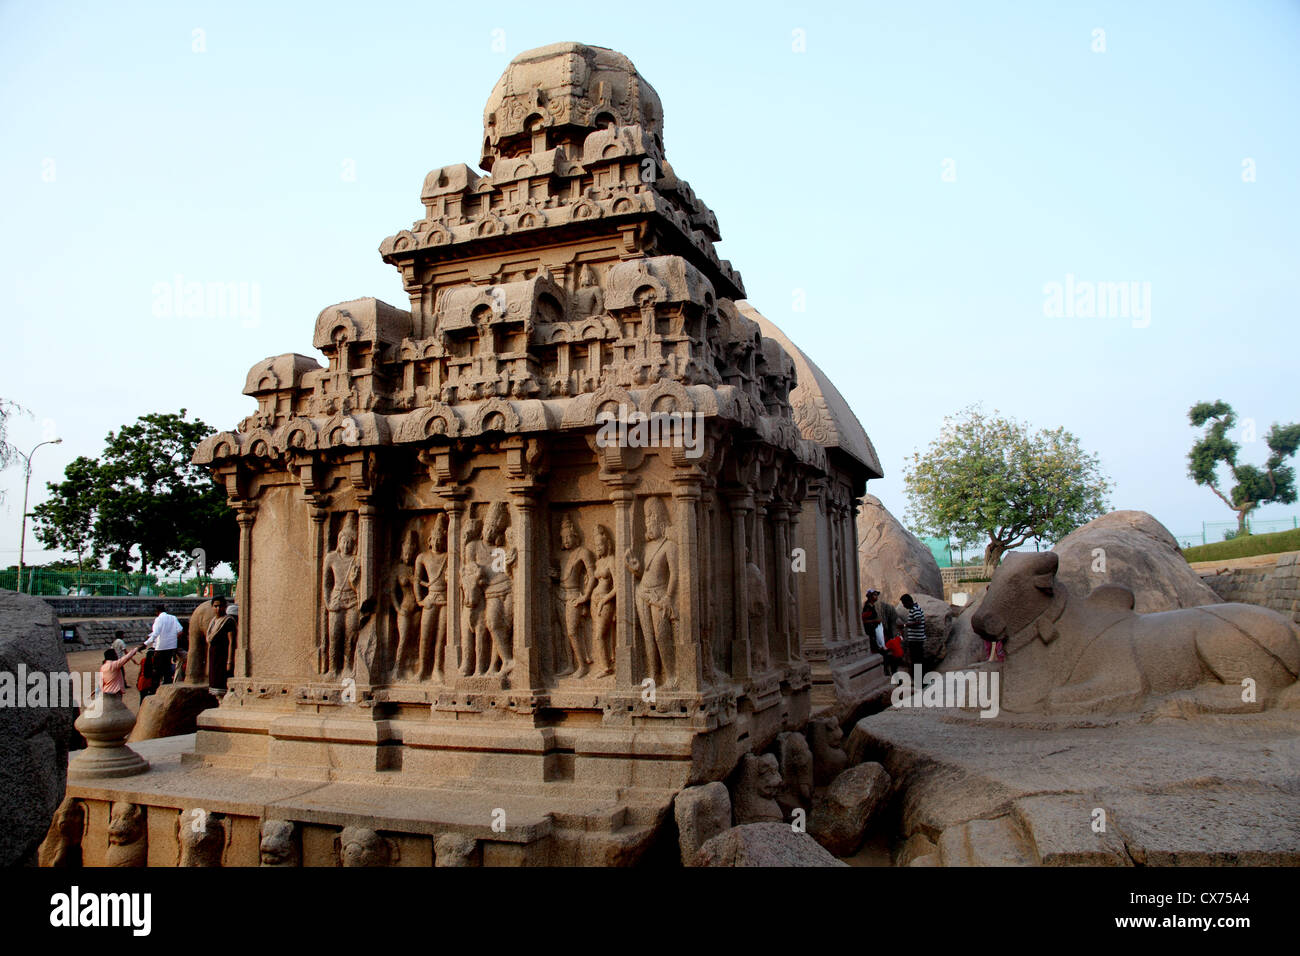 Pancha ratha temple in Mammallapuram, India Stock Photo